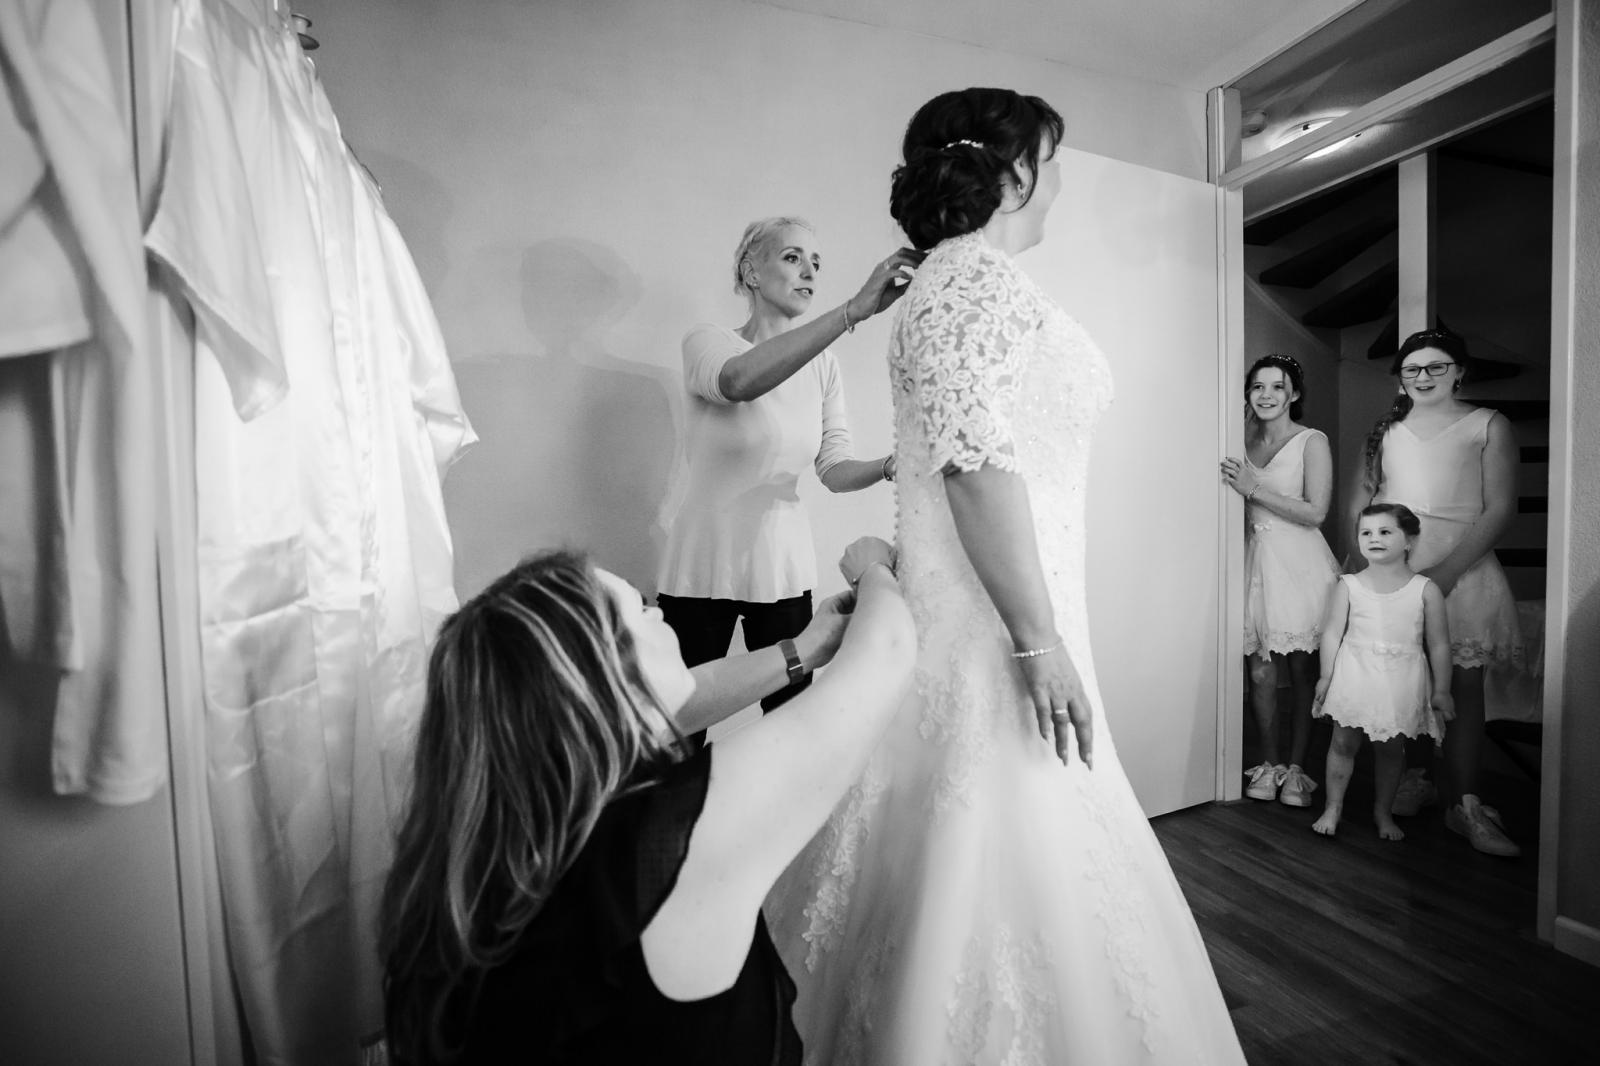 3 bruidsmeisjes kijken dromend over hun bruiloft naar hoe de bruid in haar trouwjurk gaat